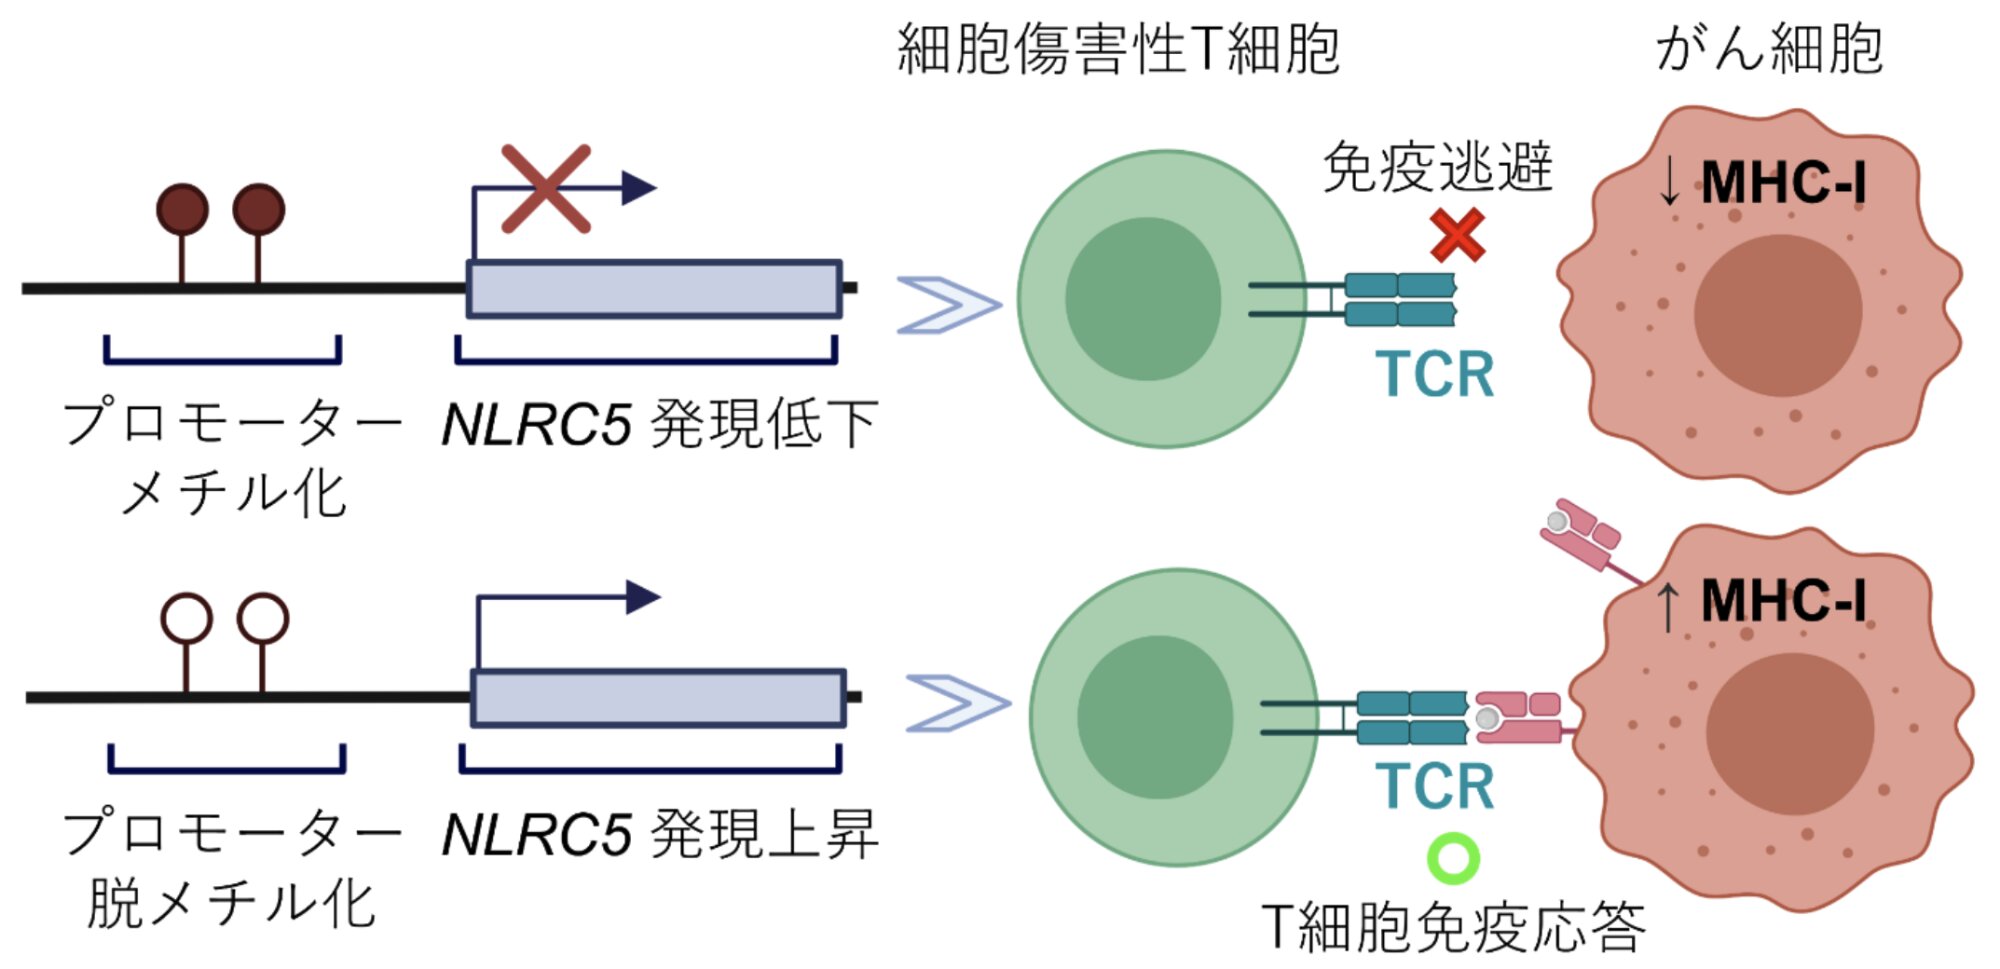 がん細胞に対するNLRC5遺伝子の制御因子（プロモーター）のメチル化と脱メチル化による違い。北海道大学のリリースより